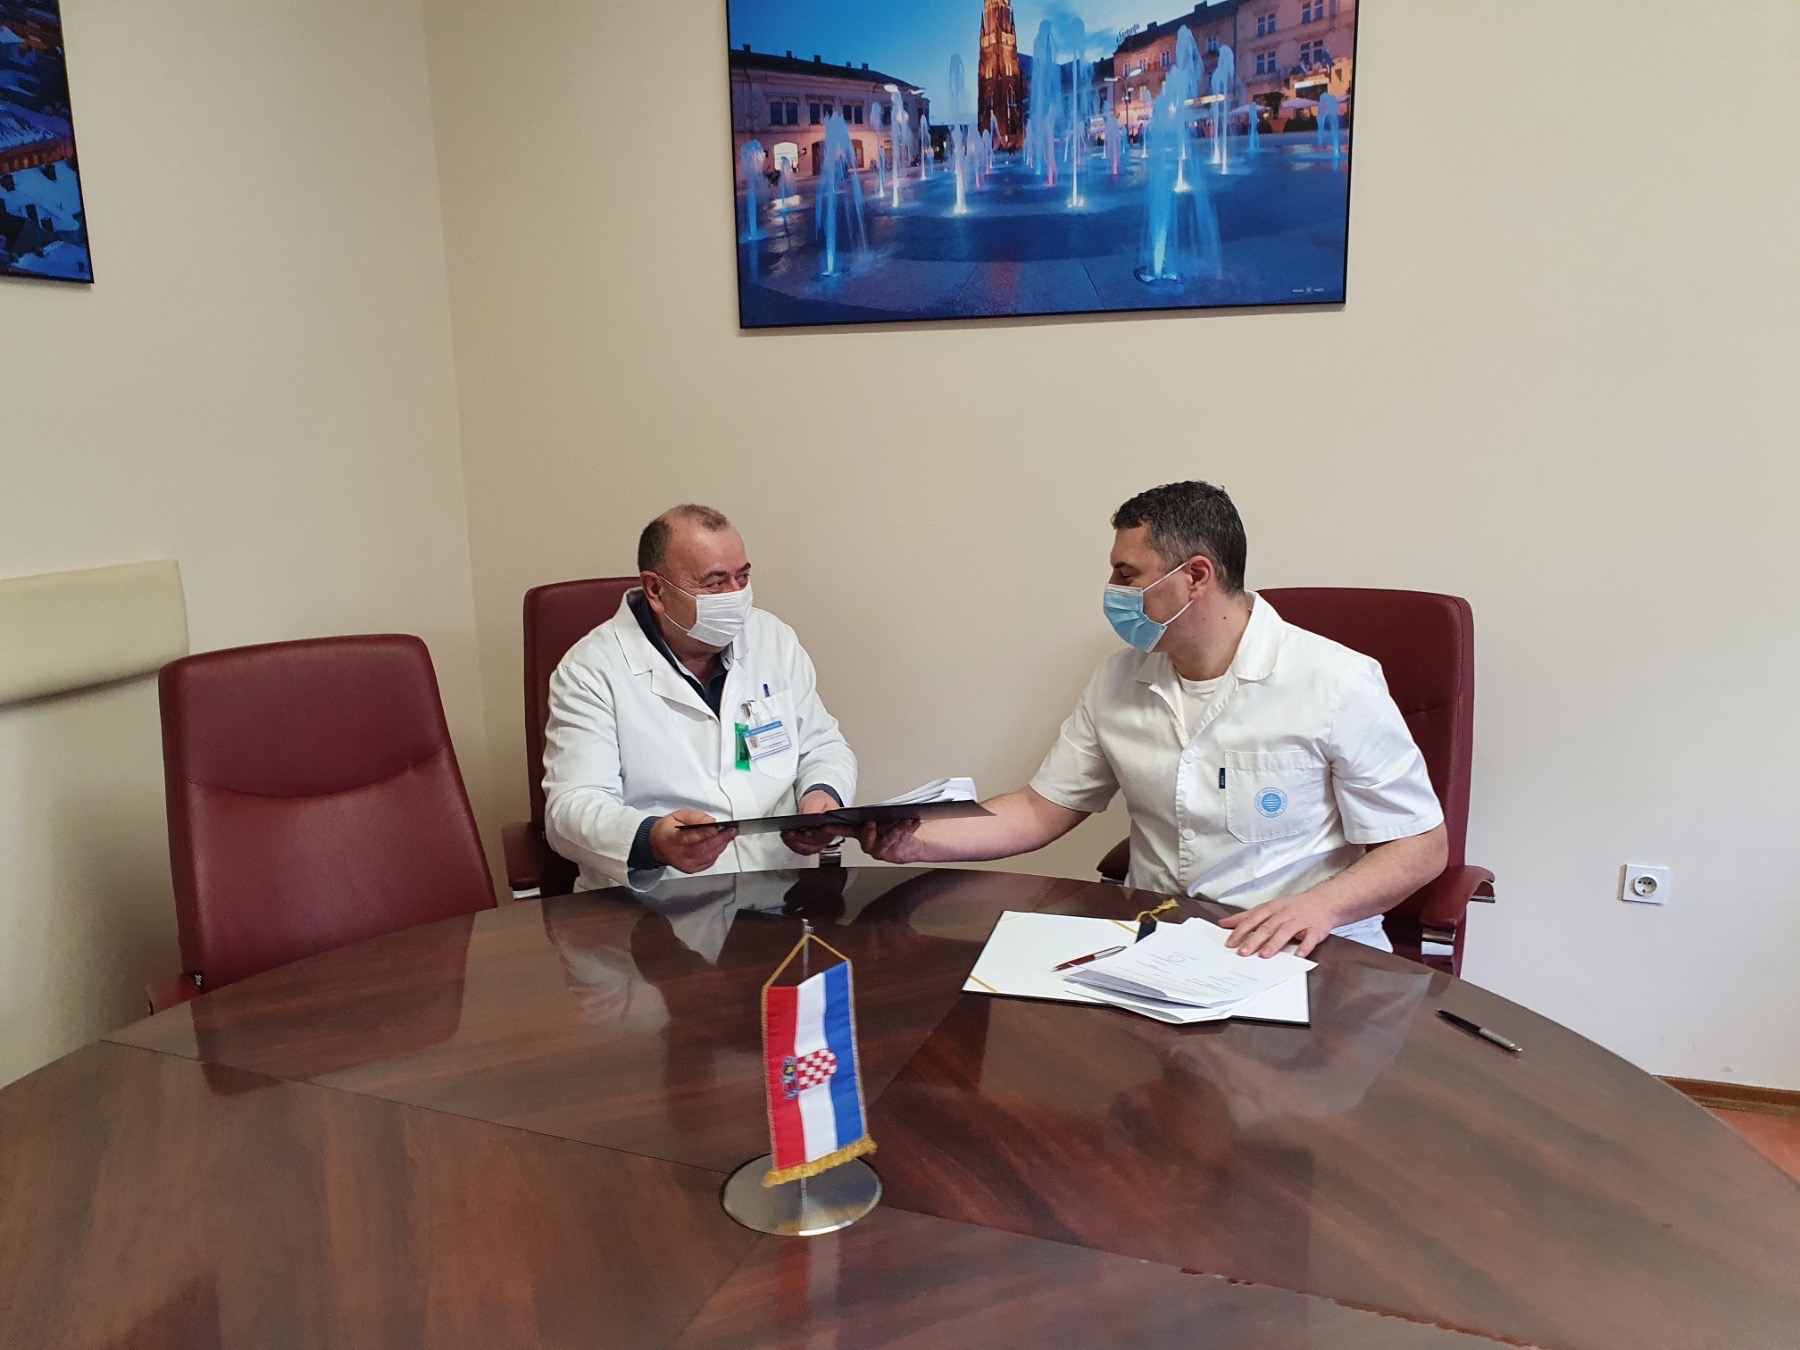 Potpisan Ugovor o poslovnoj, stručnoj i znanstveno-nastavnoj suradnji u području biomedicine i zdravstva između Medicinskog fakulteta Osijek i Kliničkog bolničkog centra Osijek